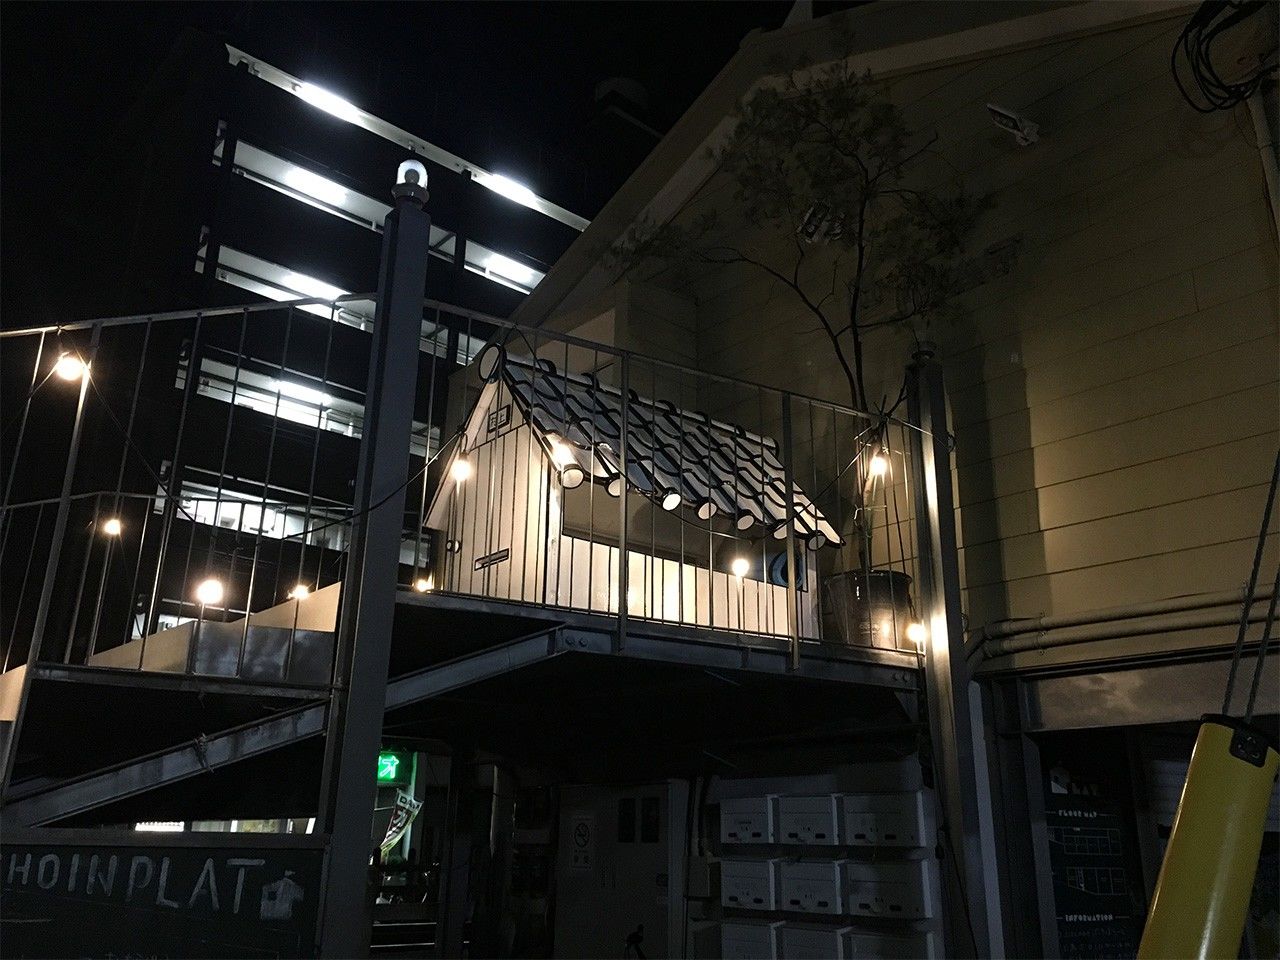 At a commercial facility in Setagaya, Tokyo (March 26, 2019).